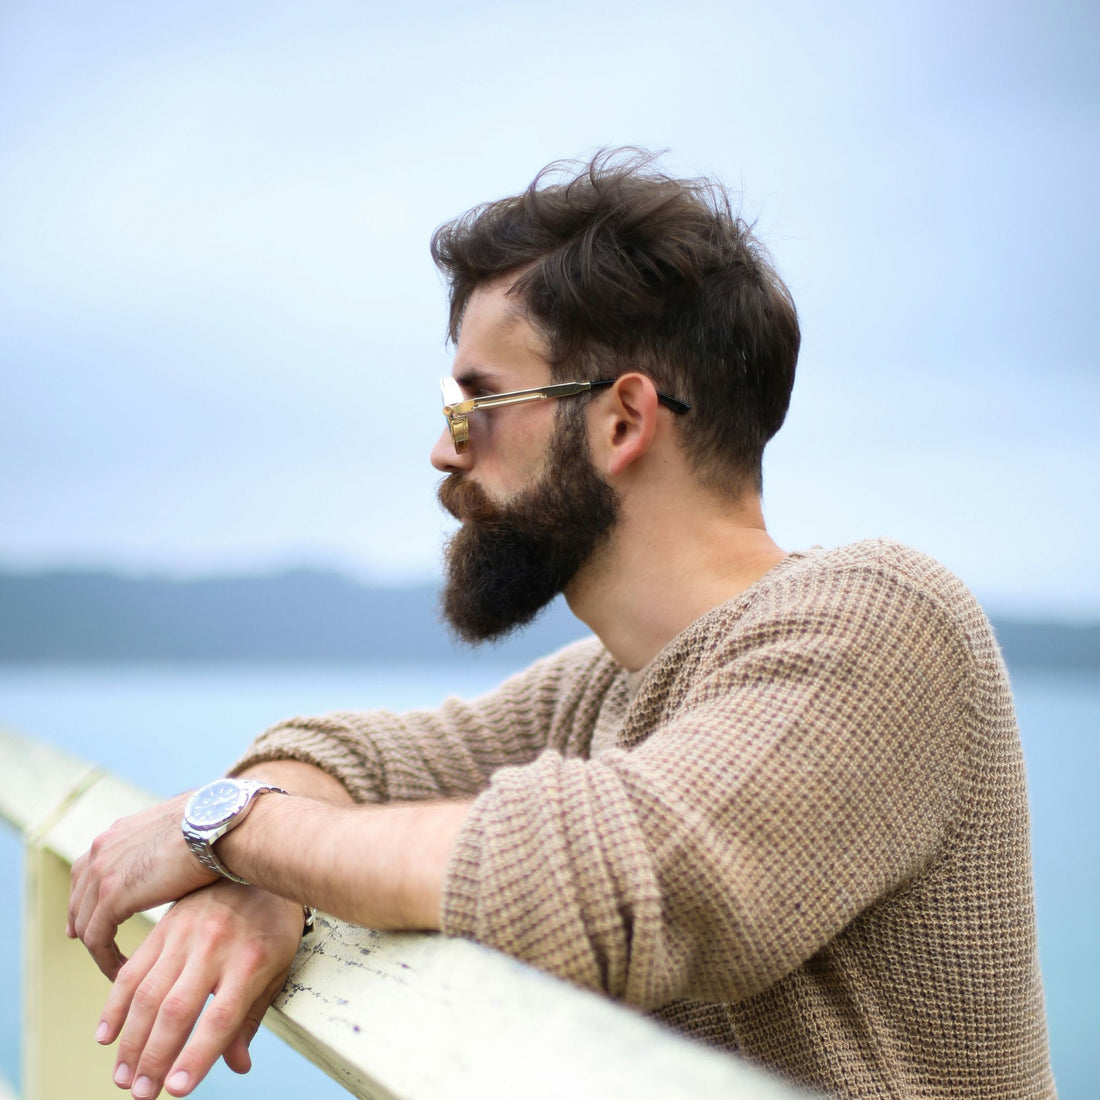 A bearded man by the ocean